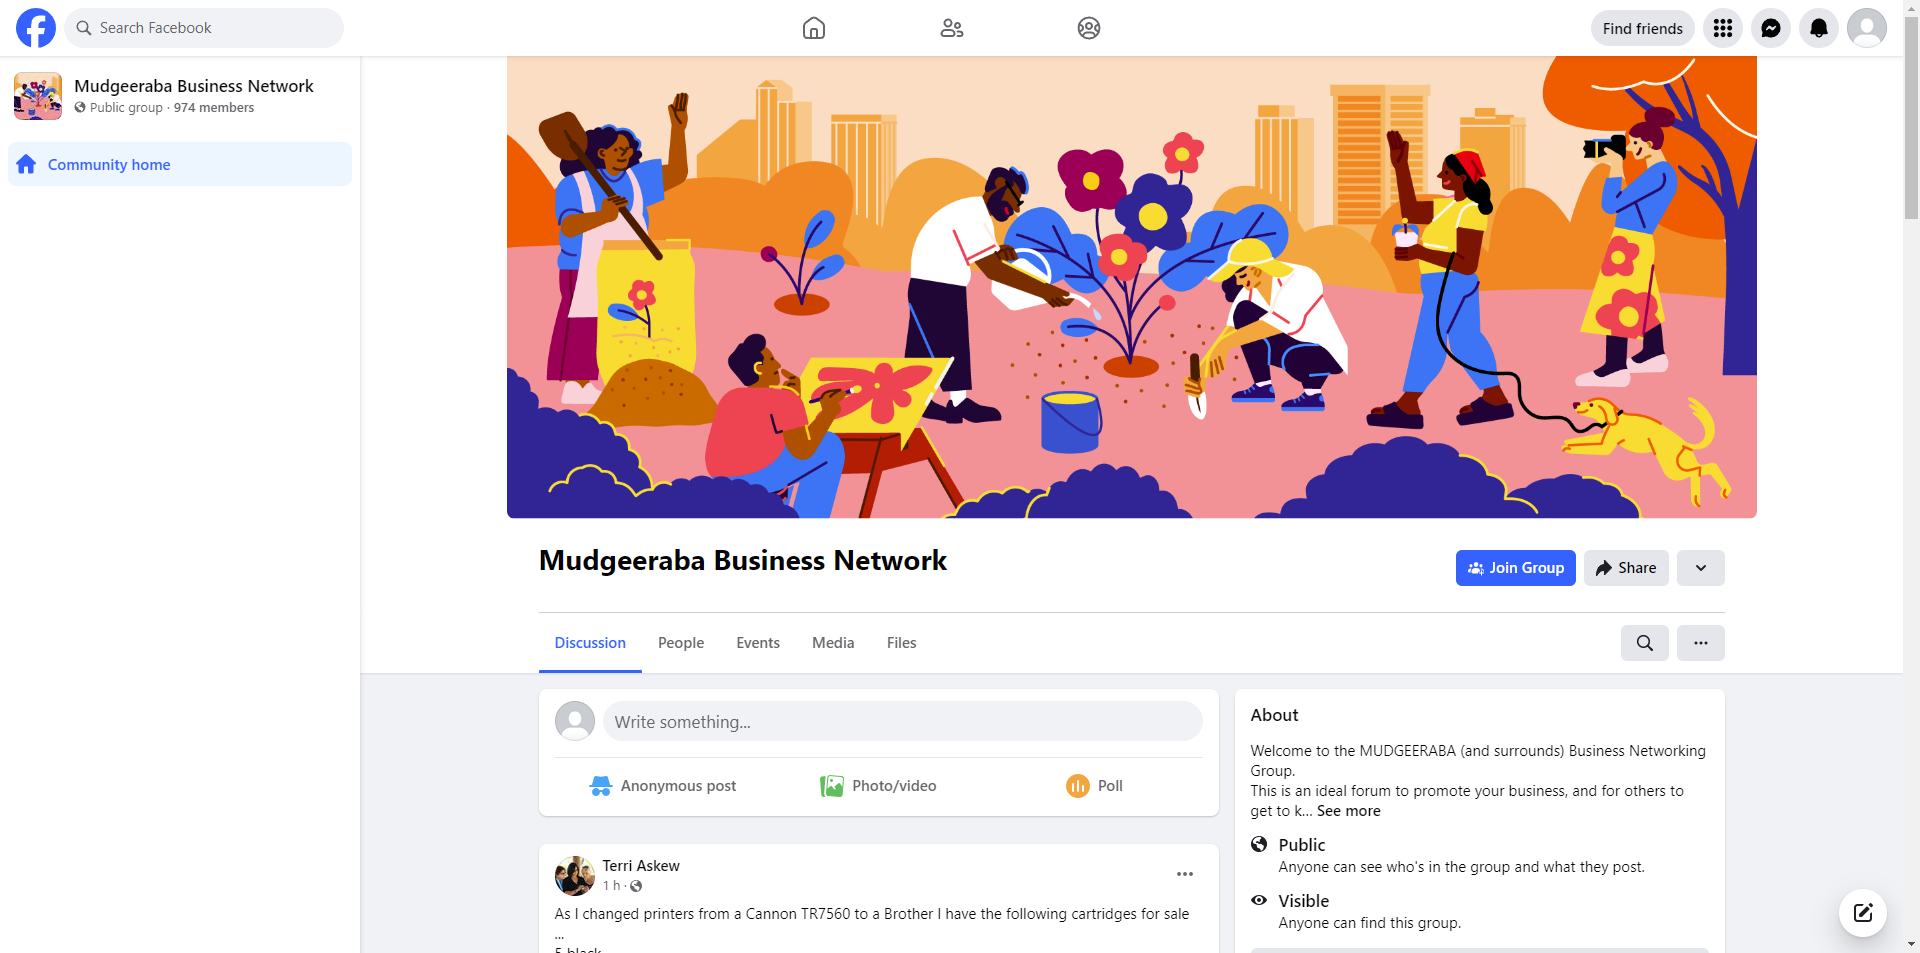 Mudgeeraba Business Network